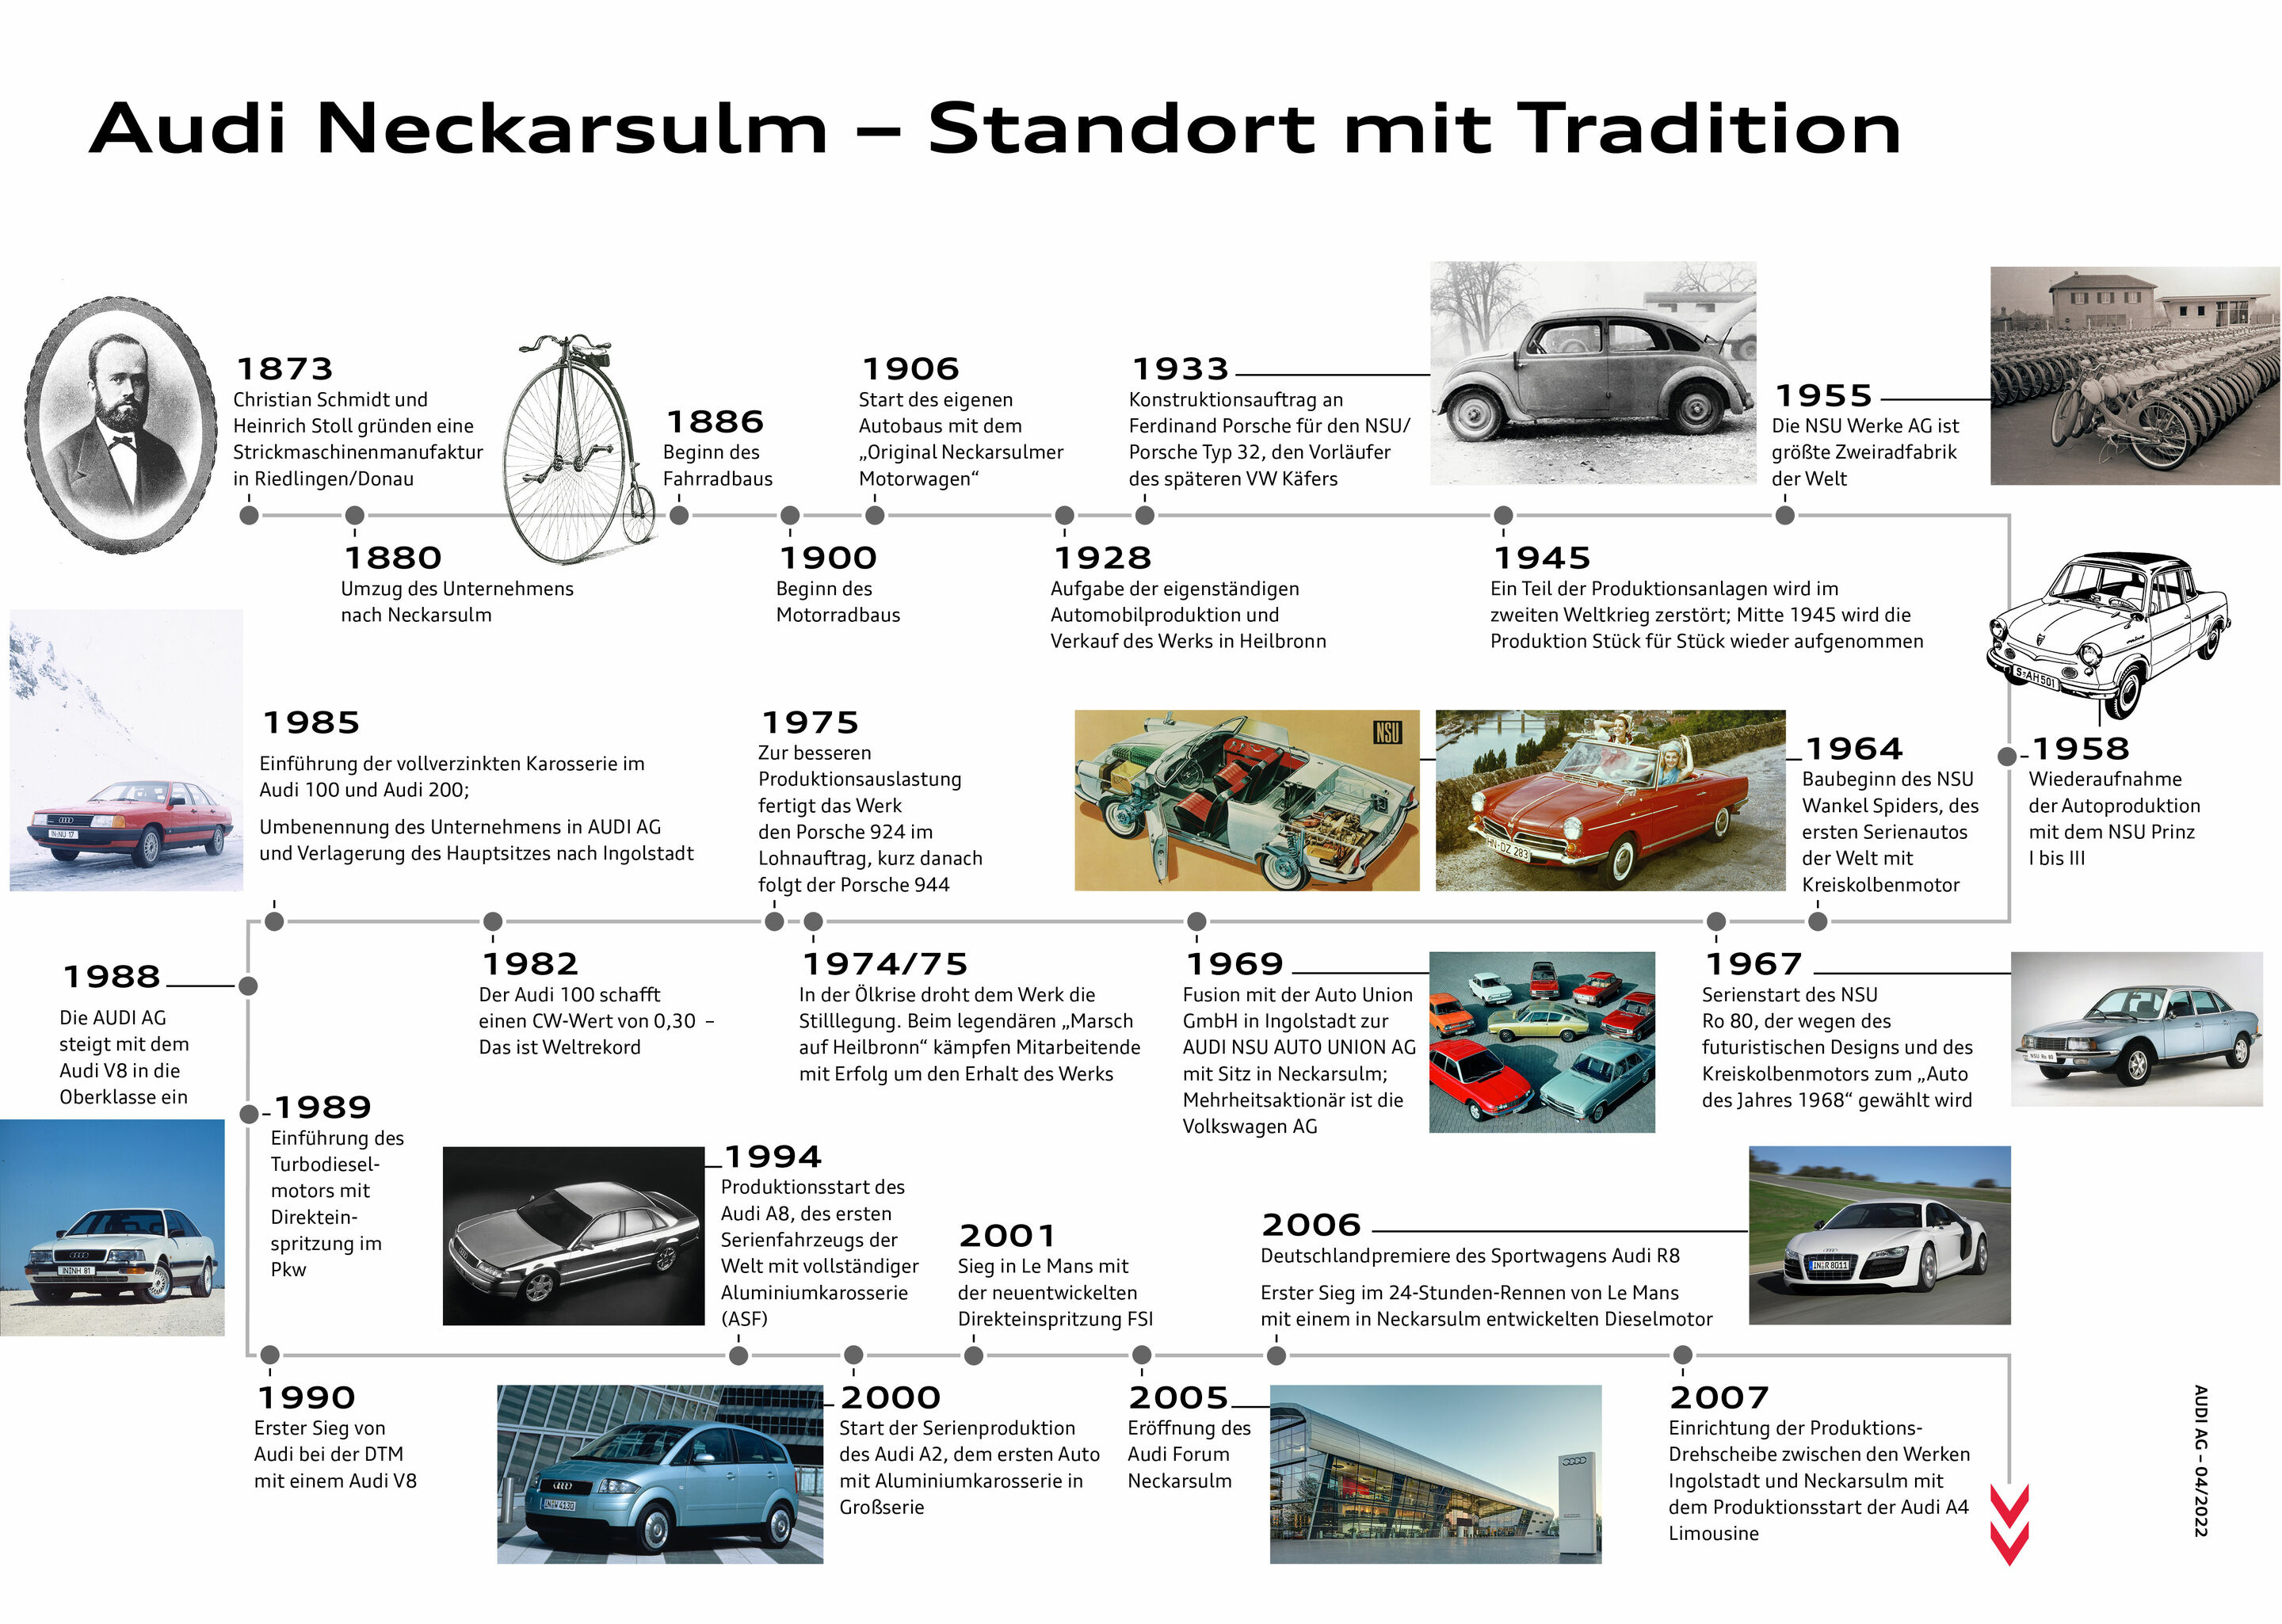 Audi Forum Neckarsulm würdigt Geschichte des Werbeslogans „Vorsprung durch Technik“